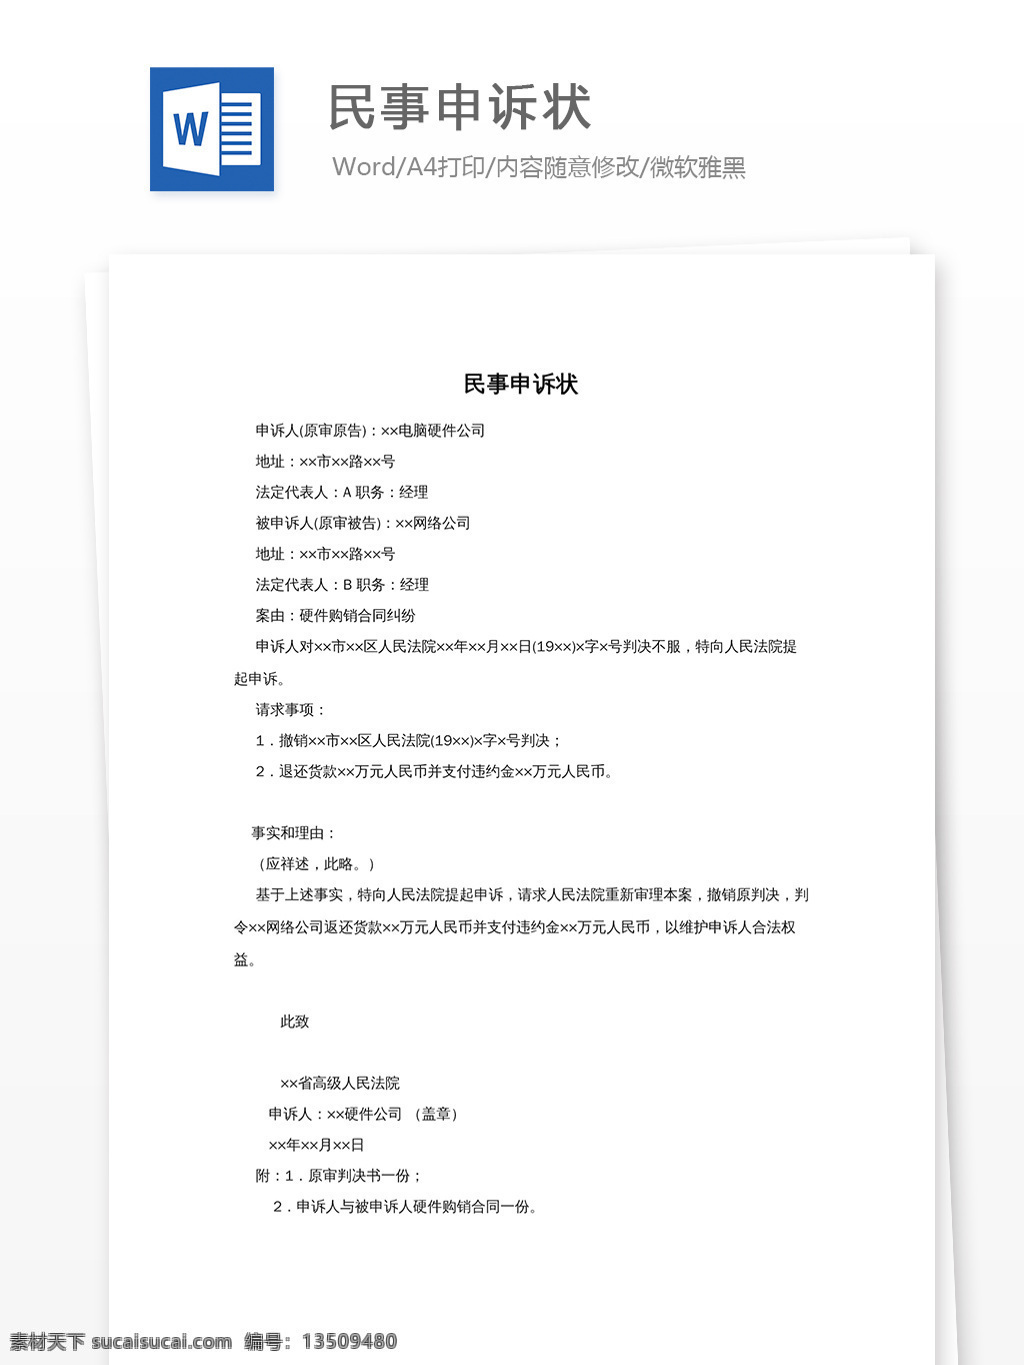 民事申诉状 民事 文档模板 文档素材 word文档 实用模板